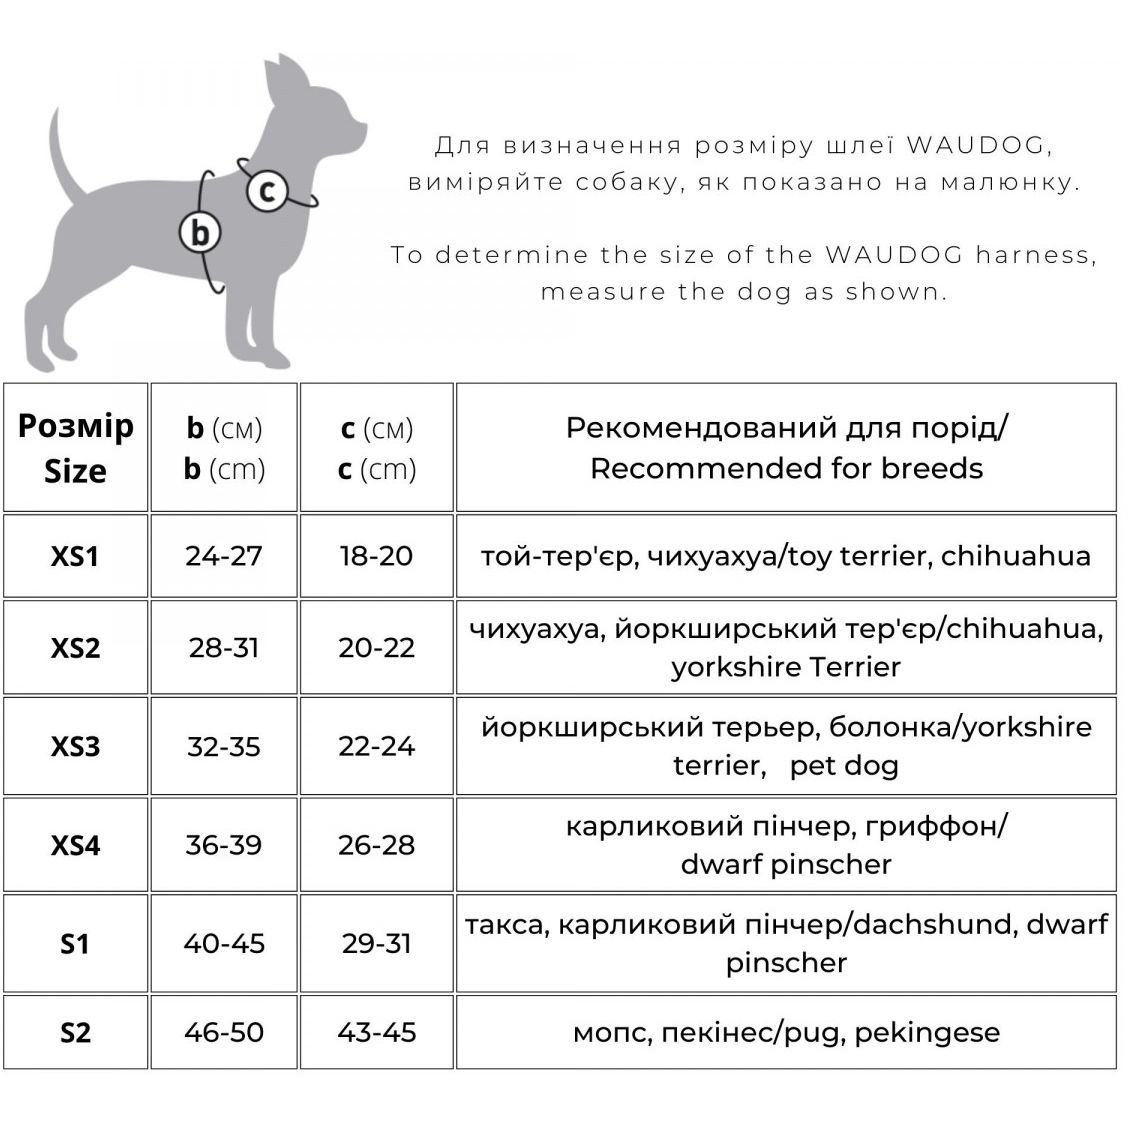 Шлея для собак м'яка Waudog Clothes Чудо-жінка фіолет, з QR паспортом, XS4, 36-39х26-28см (1004-4008) - фото 4